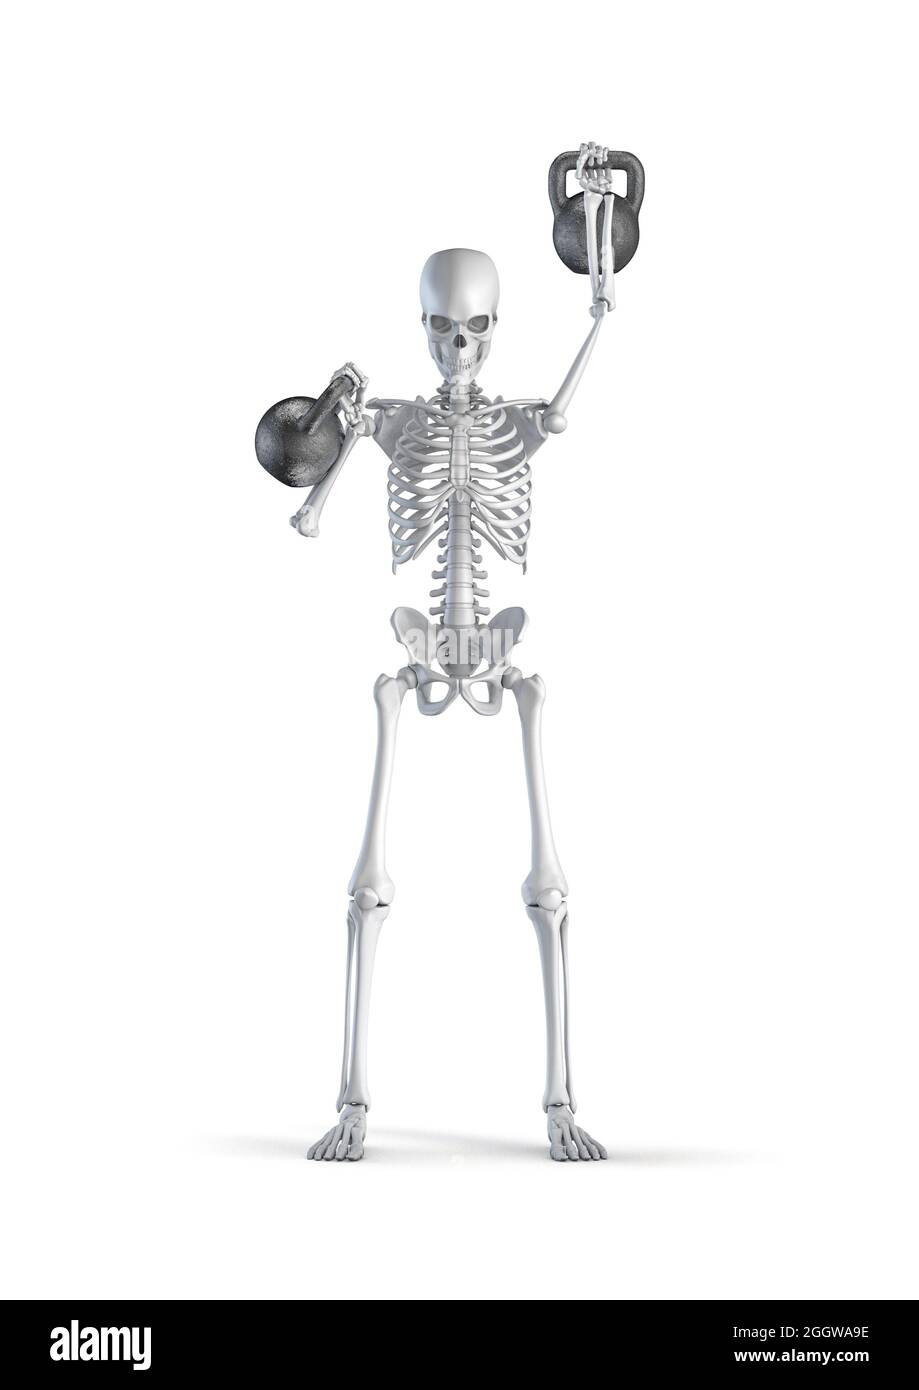 Fitness Skelett Kettlebell - 3D-Illustration von männlichen menschlichen Skelett Figur heben schwere Paar Kettlebells isoliert auf weißem Studio-Hintergrund Stockfoto